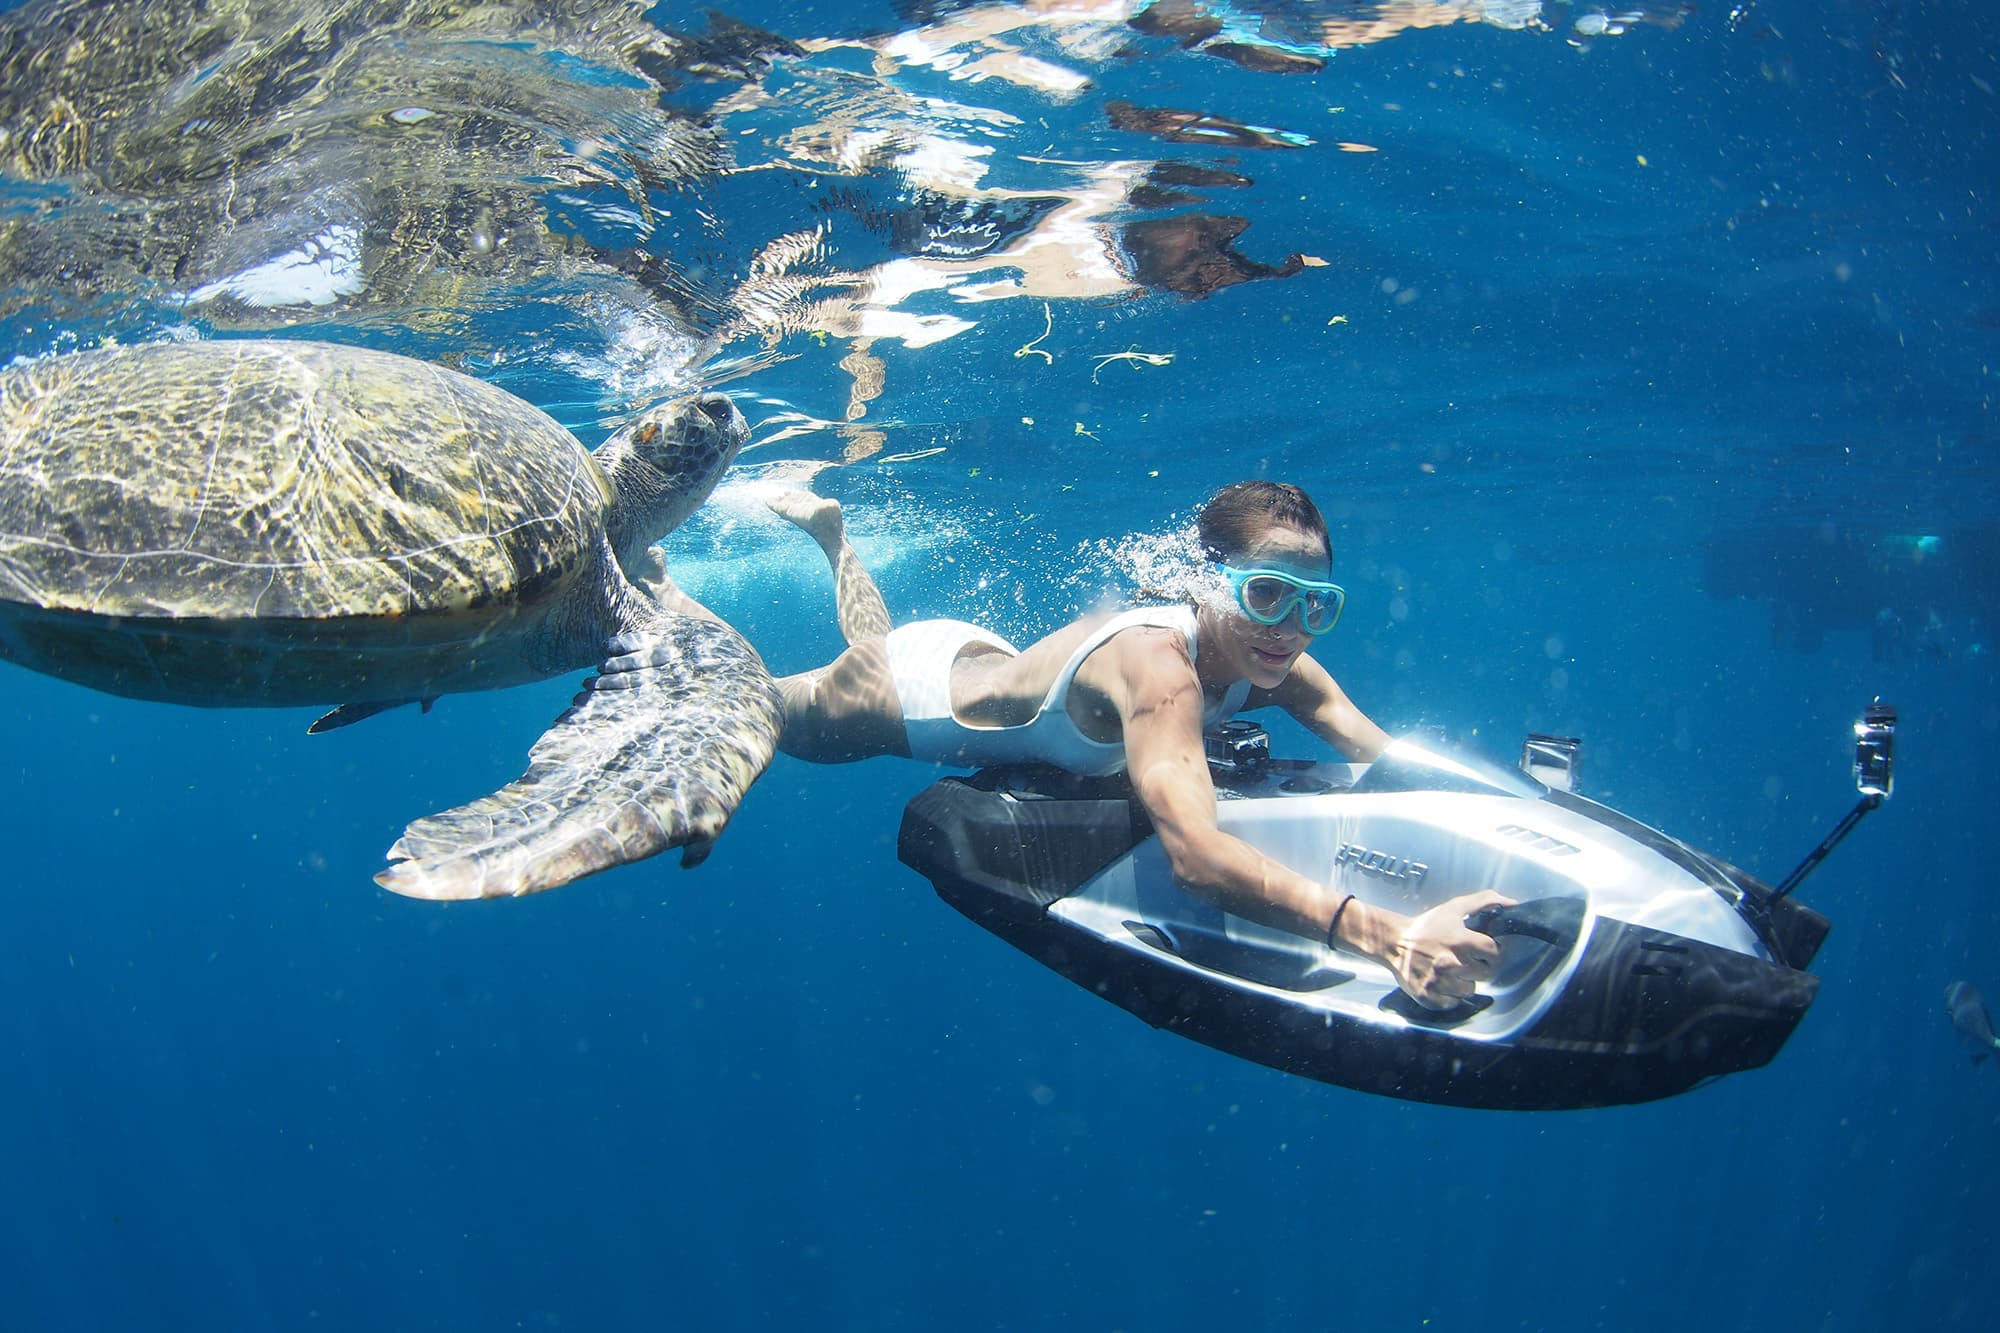 Mulher e tartaruga marinha explorando o mar